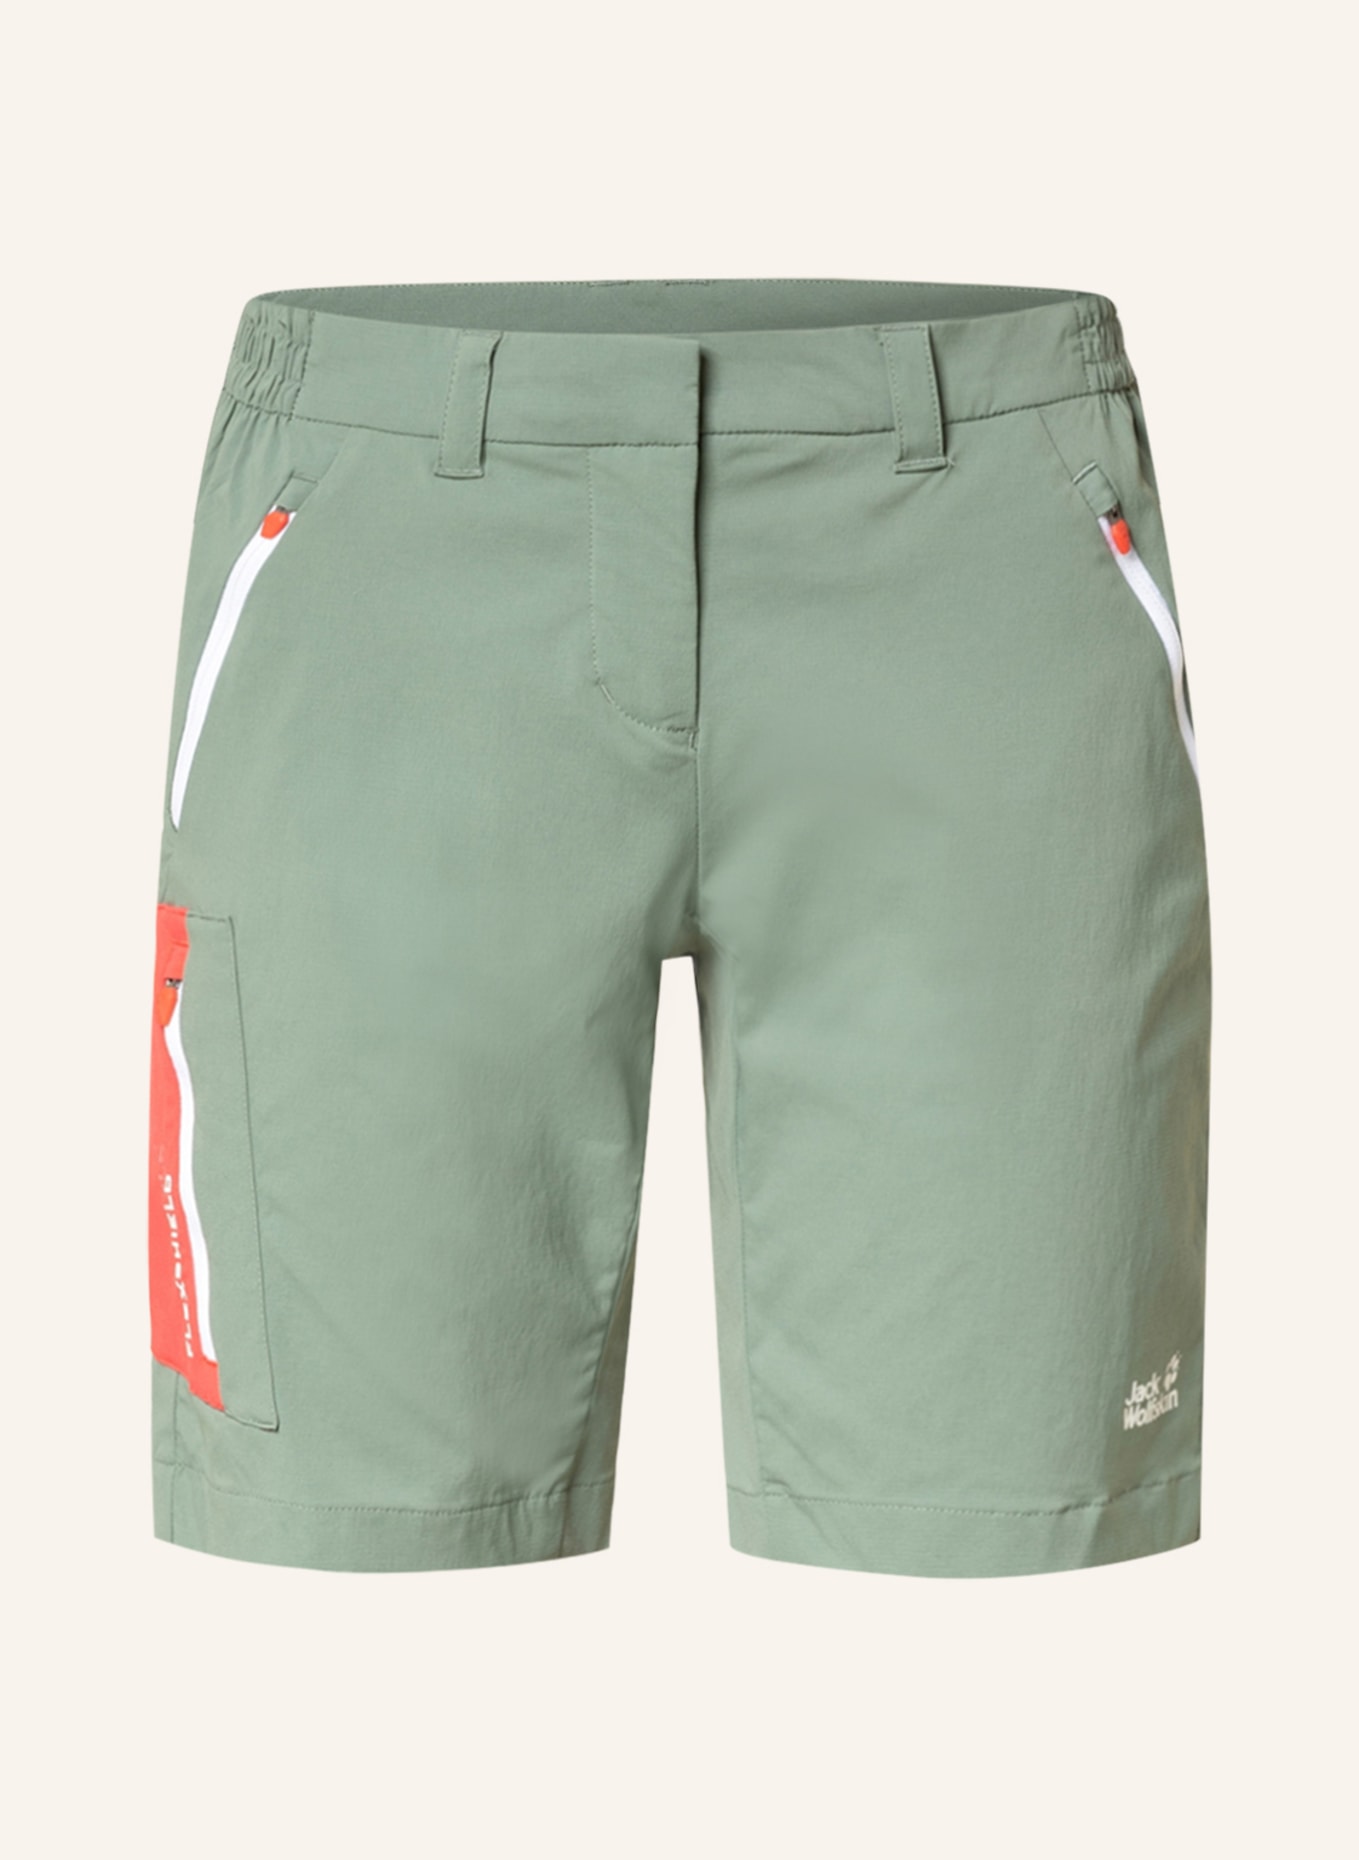 Jack Wolfskin Outdoor-Shorts OVERLAND, Farbe: HELLGRÜN (Bild 1)